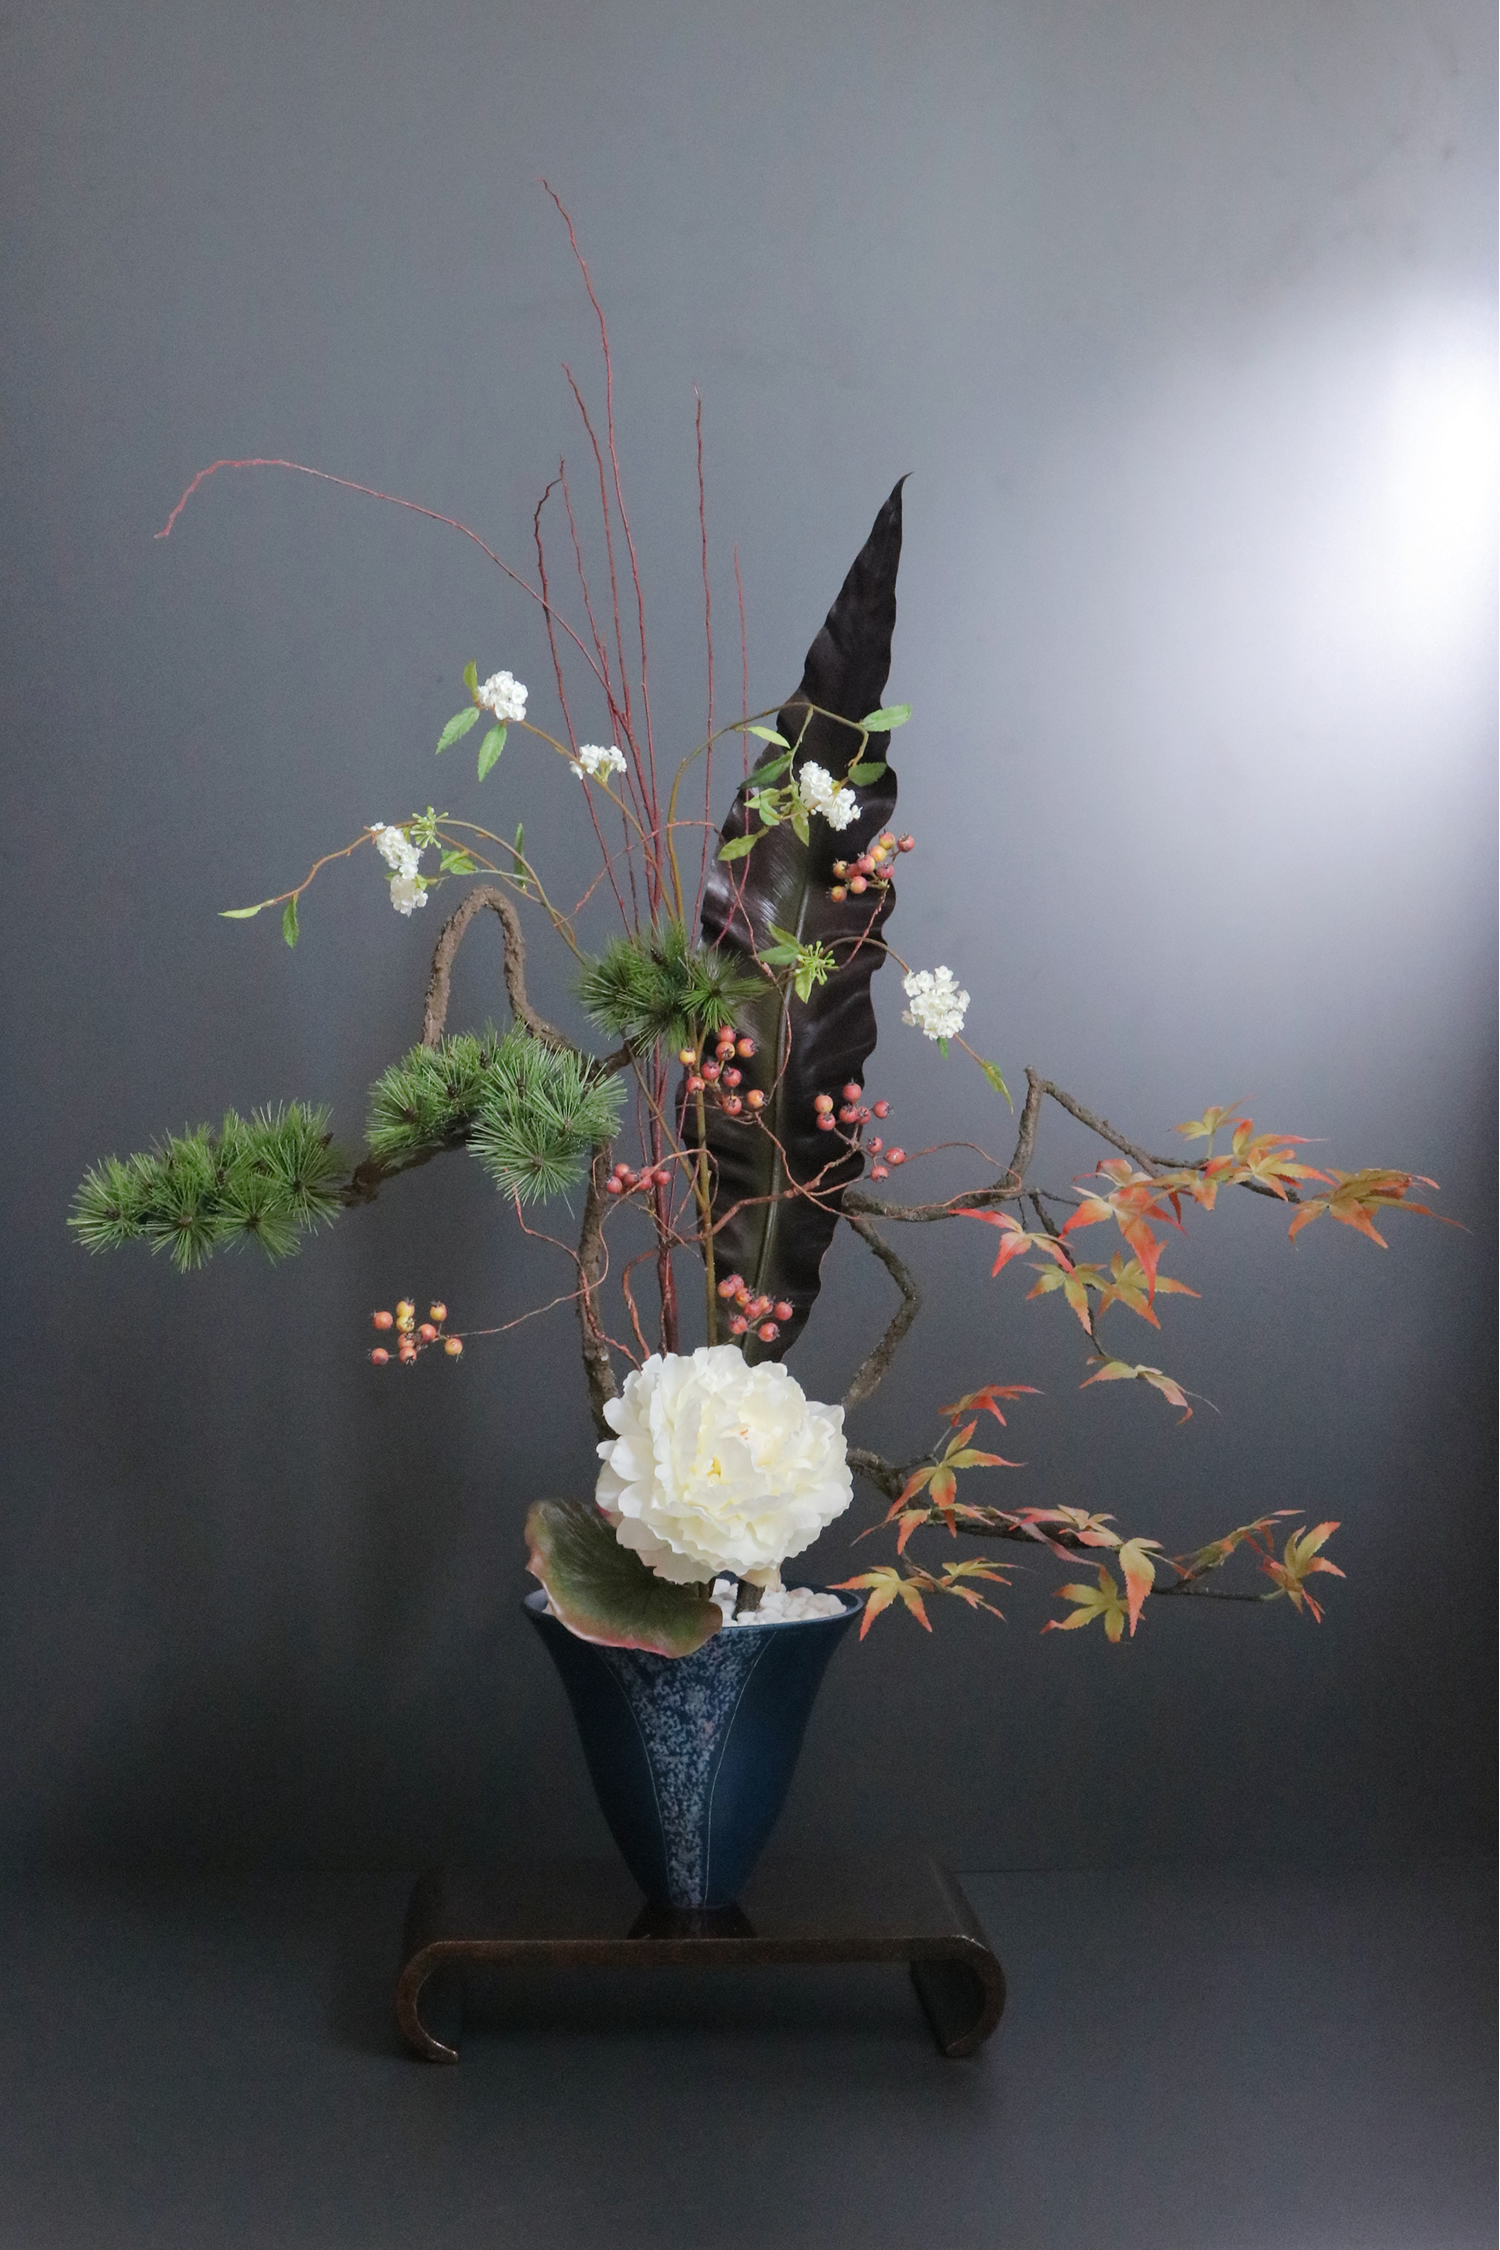 ホワイト芍薬×モミジ 和風スタイル 造花 アートフラワー Akanbi